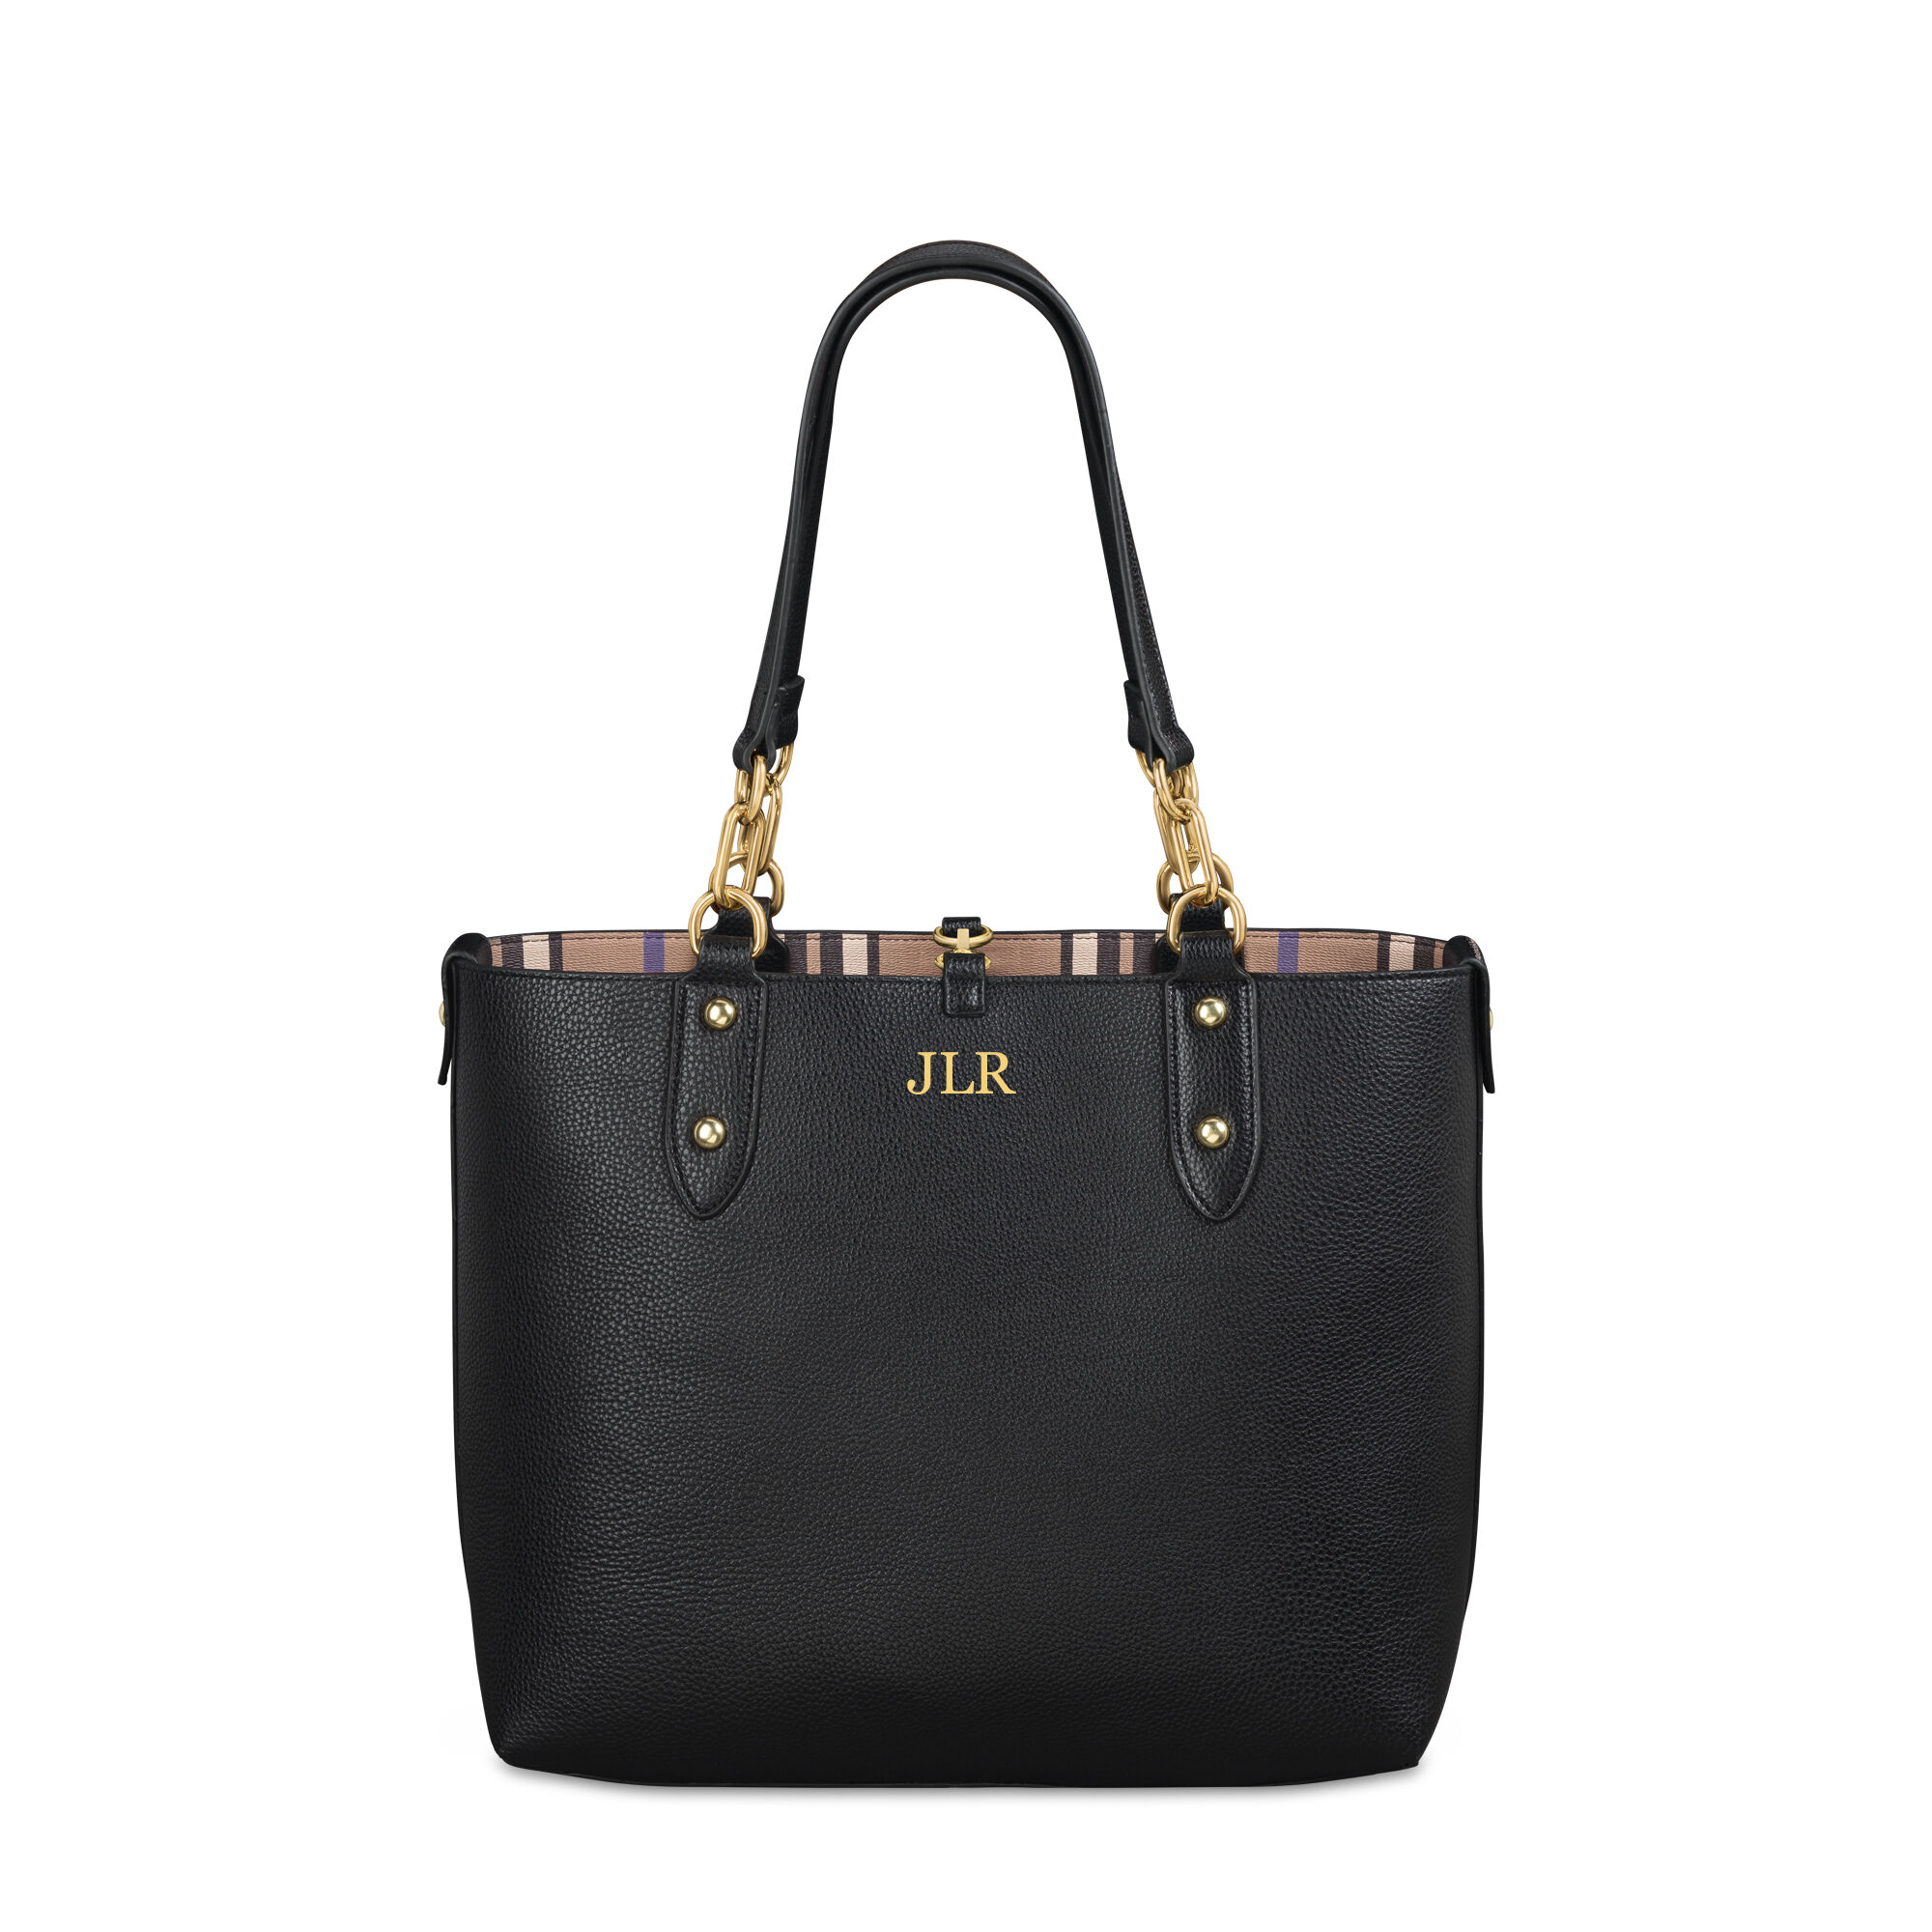 The Oxford Reversible Tote Bag 0052 0023 b handbag